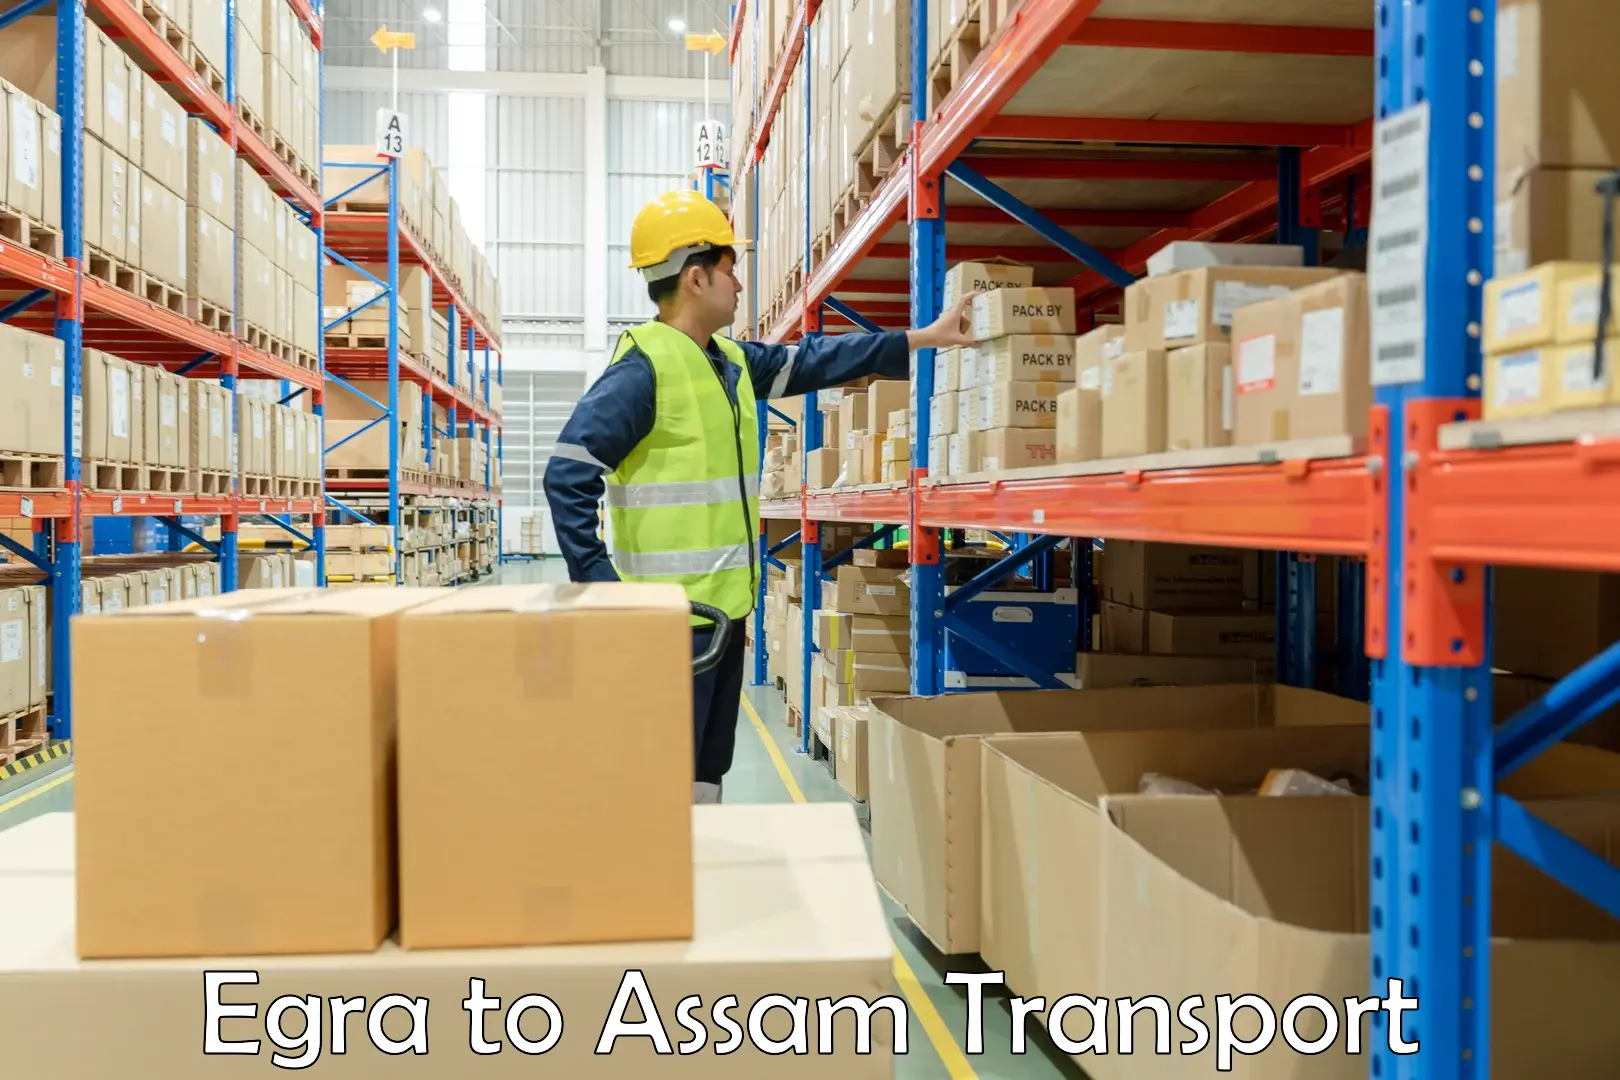 Nearest transport service Egra to Assam